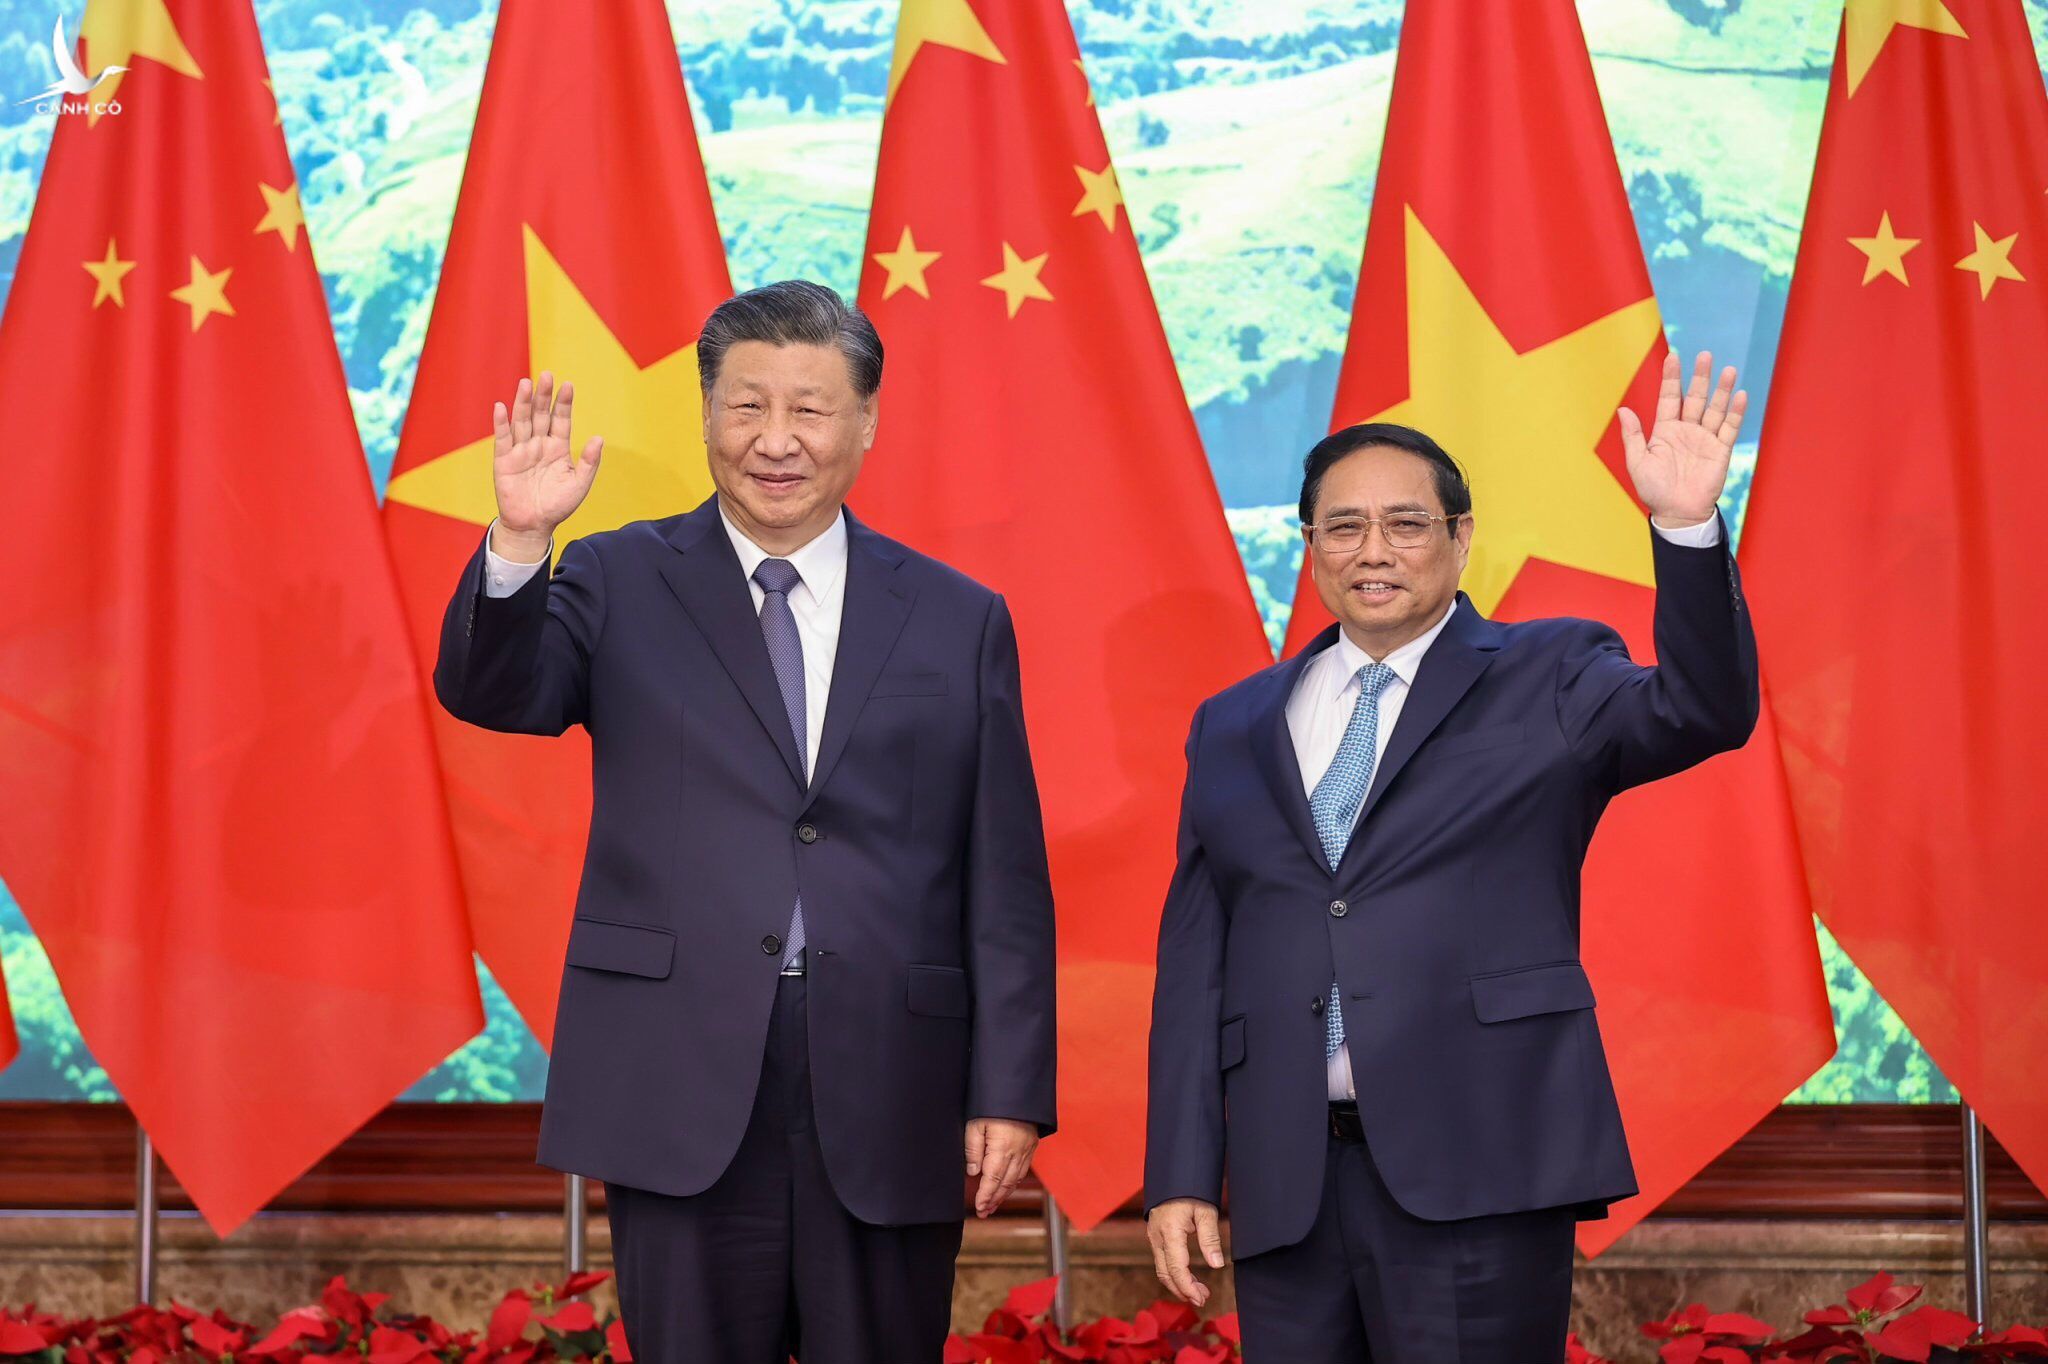 Thủ tướng Phạm Minh Chính và Tổng bí thư, Chủ tịch Trung Quốc Tập Cận Bình sáng 13/12. 